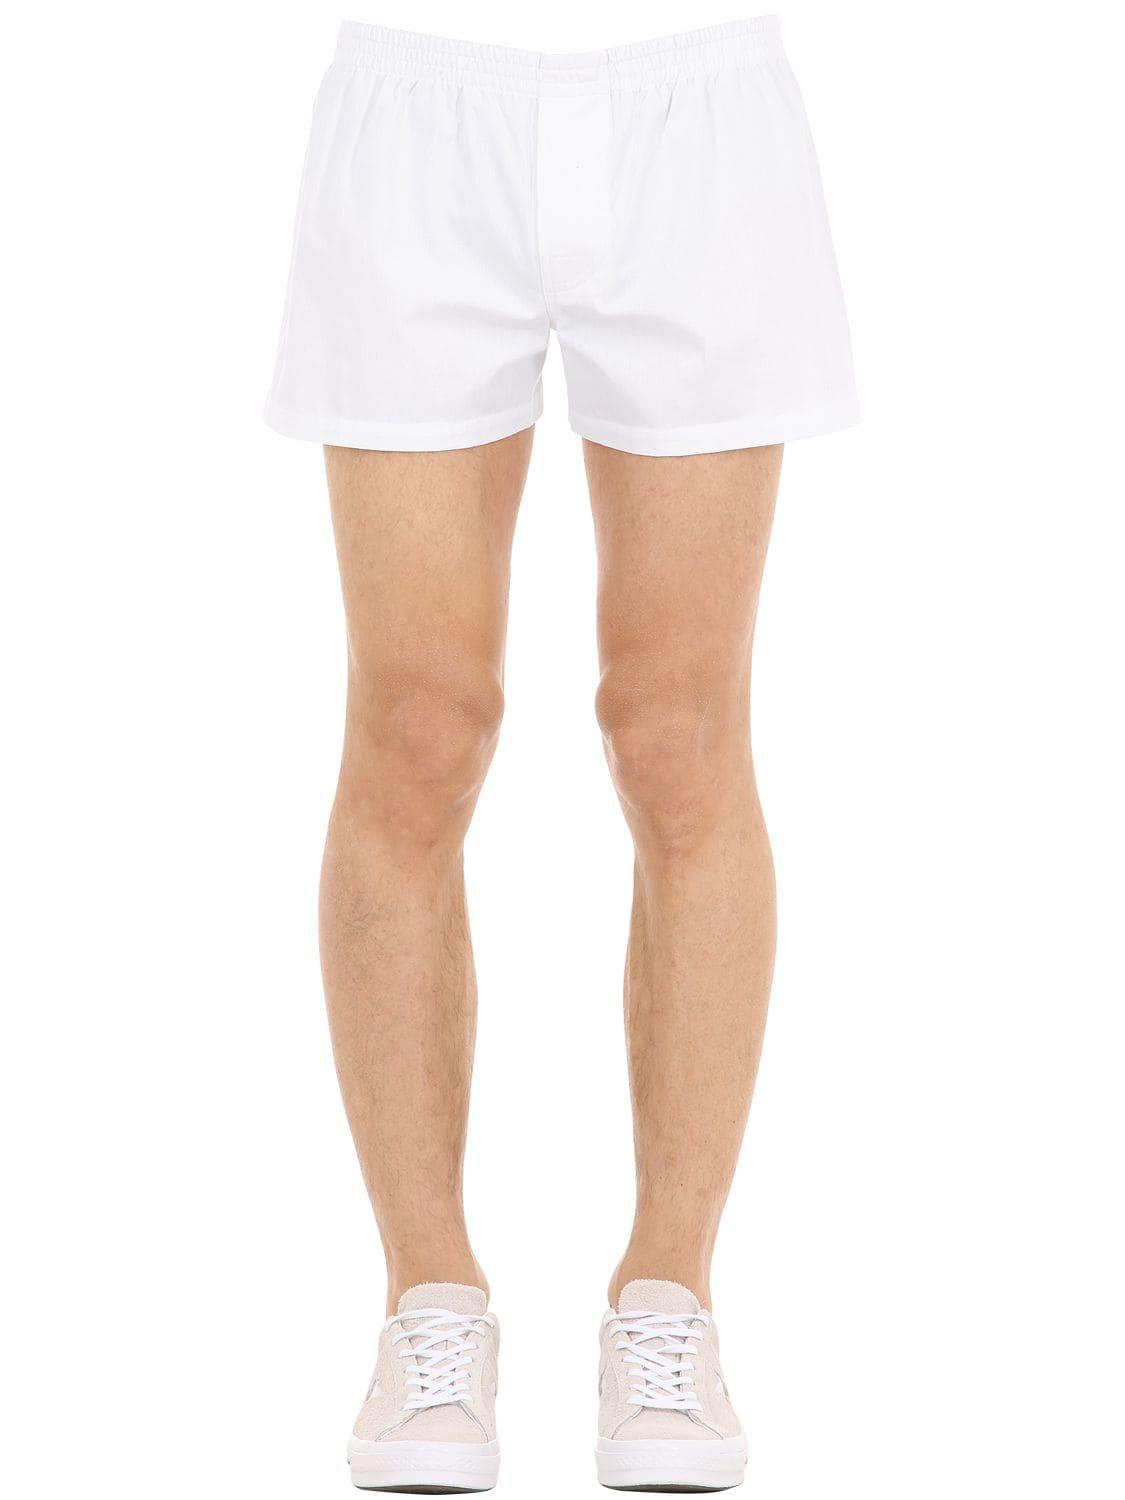 Jacquemus Le Caleçon Cotton Shorts in White for Men - Lyst